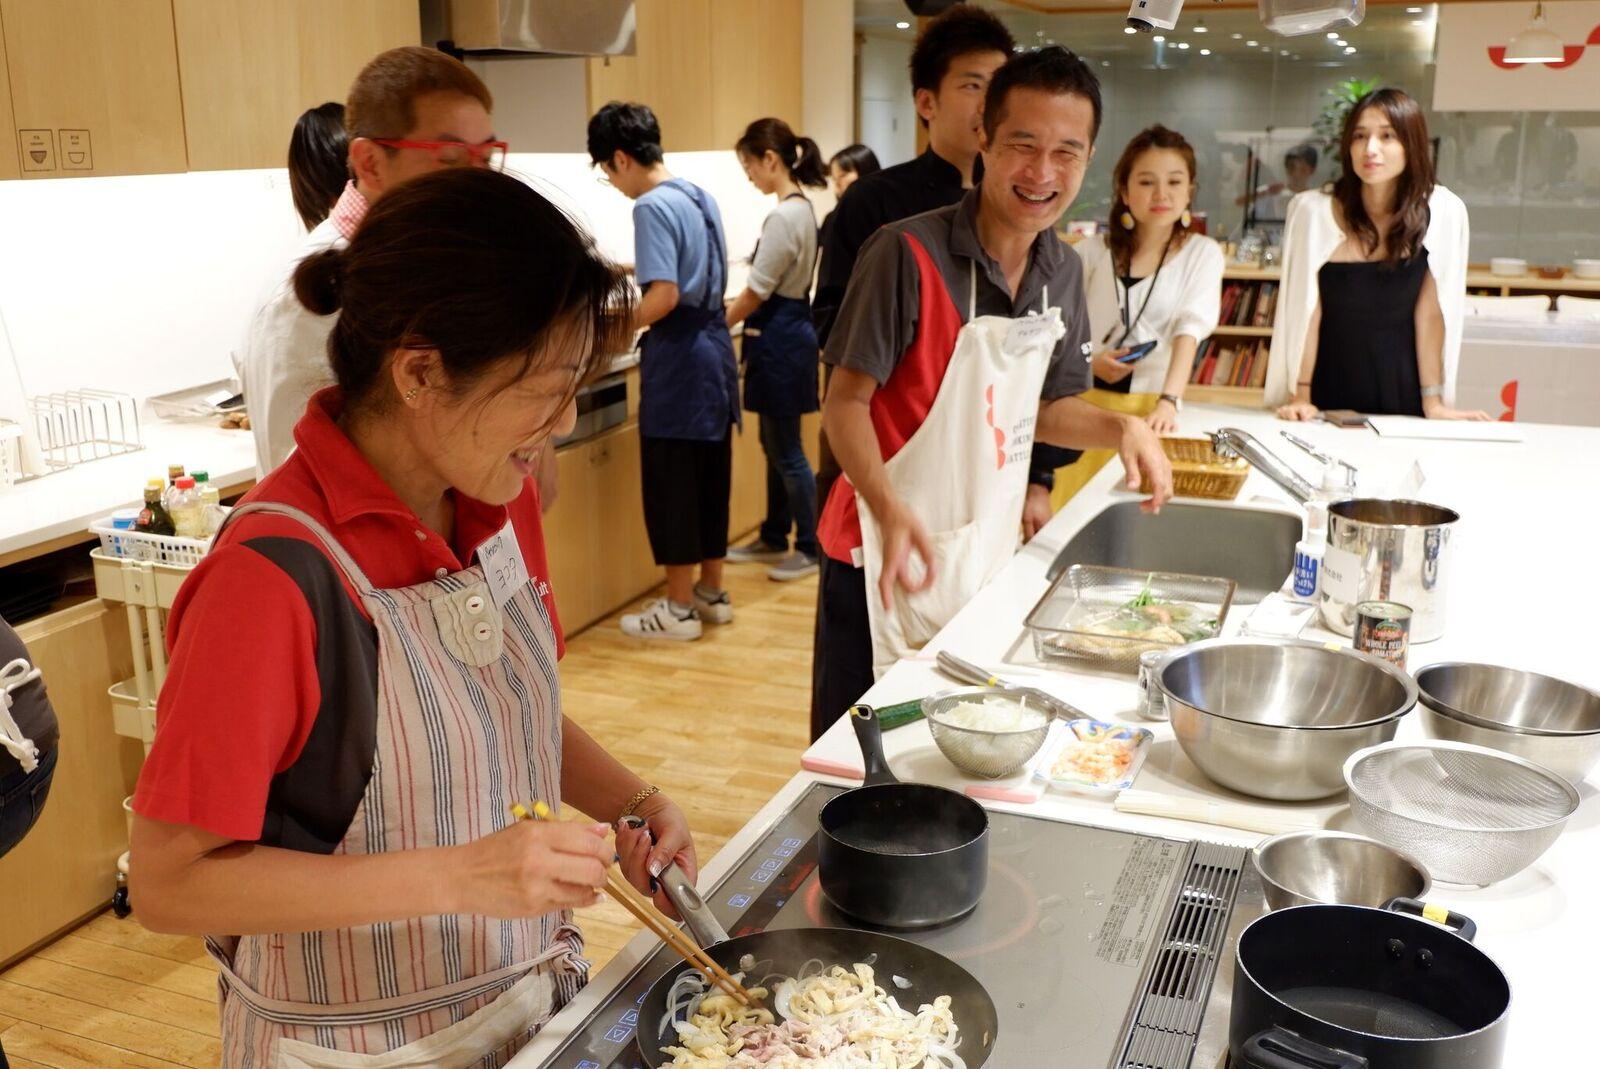 5_調理中の様子_Members are cooking.jpeg